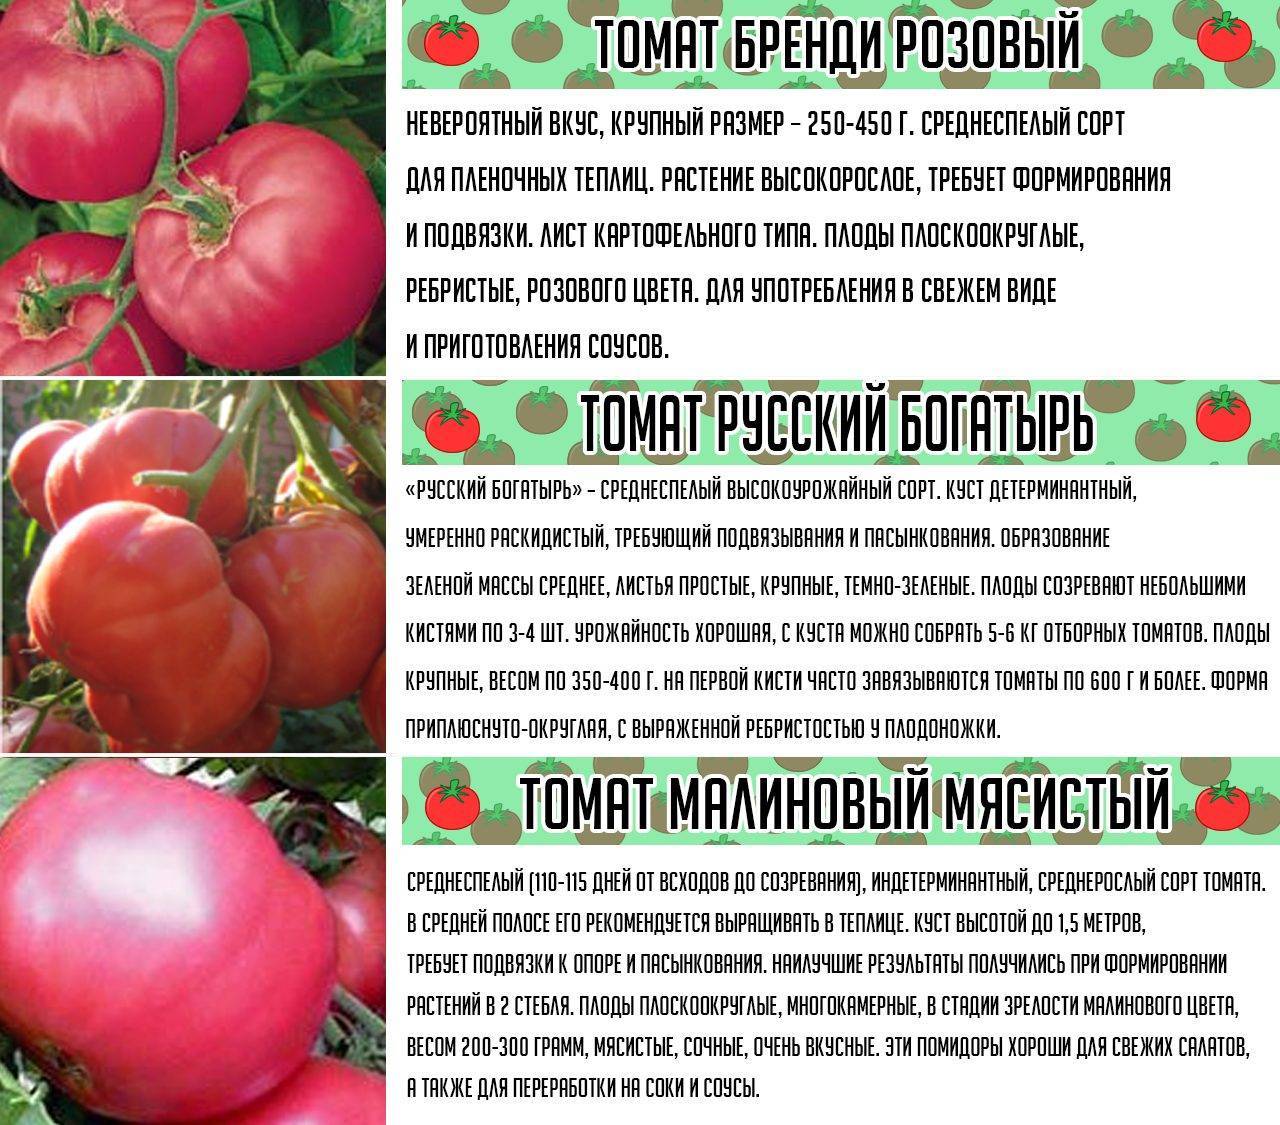 Описание гибридного томата линда f1, уход за растением и отзывы садоводов